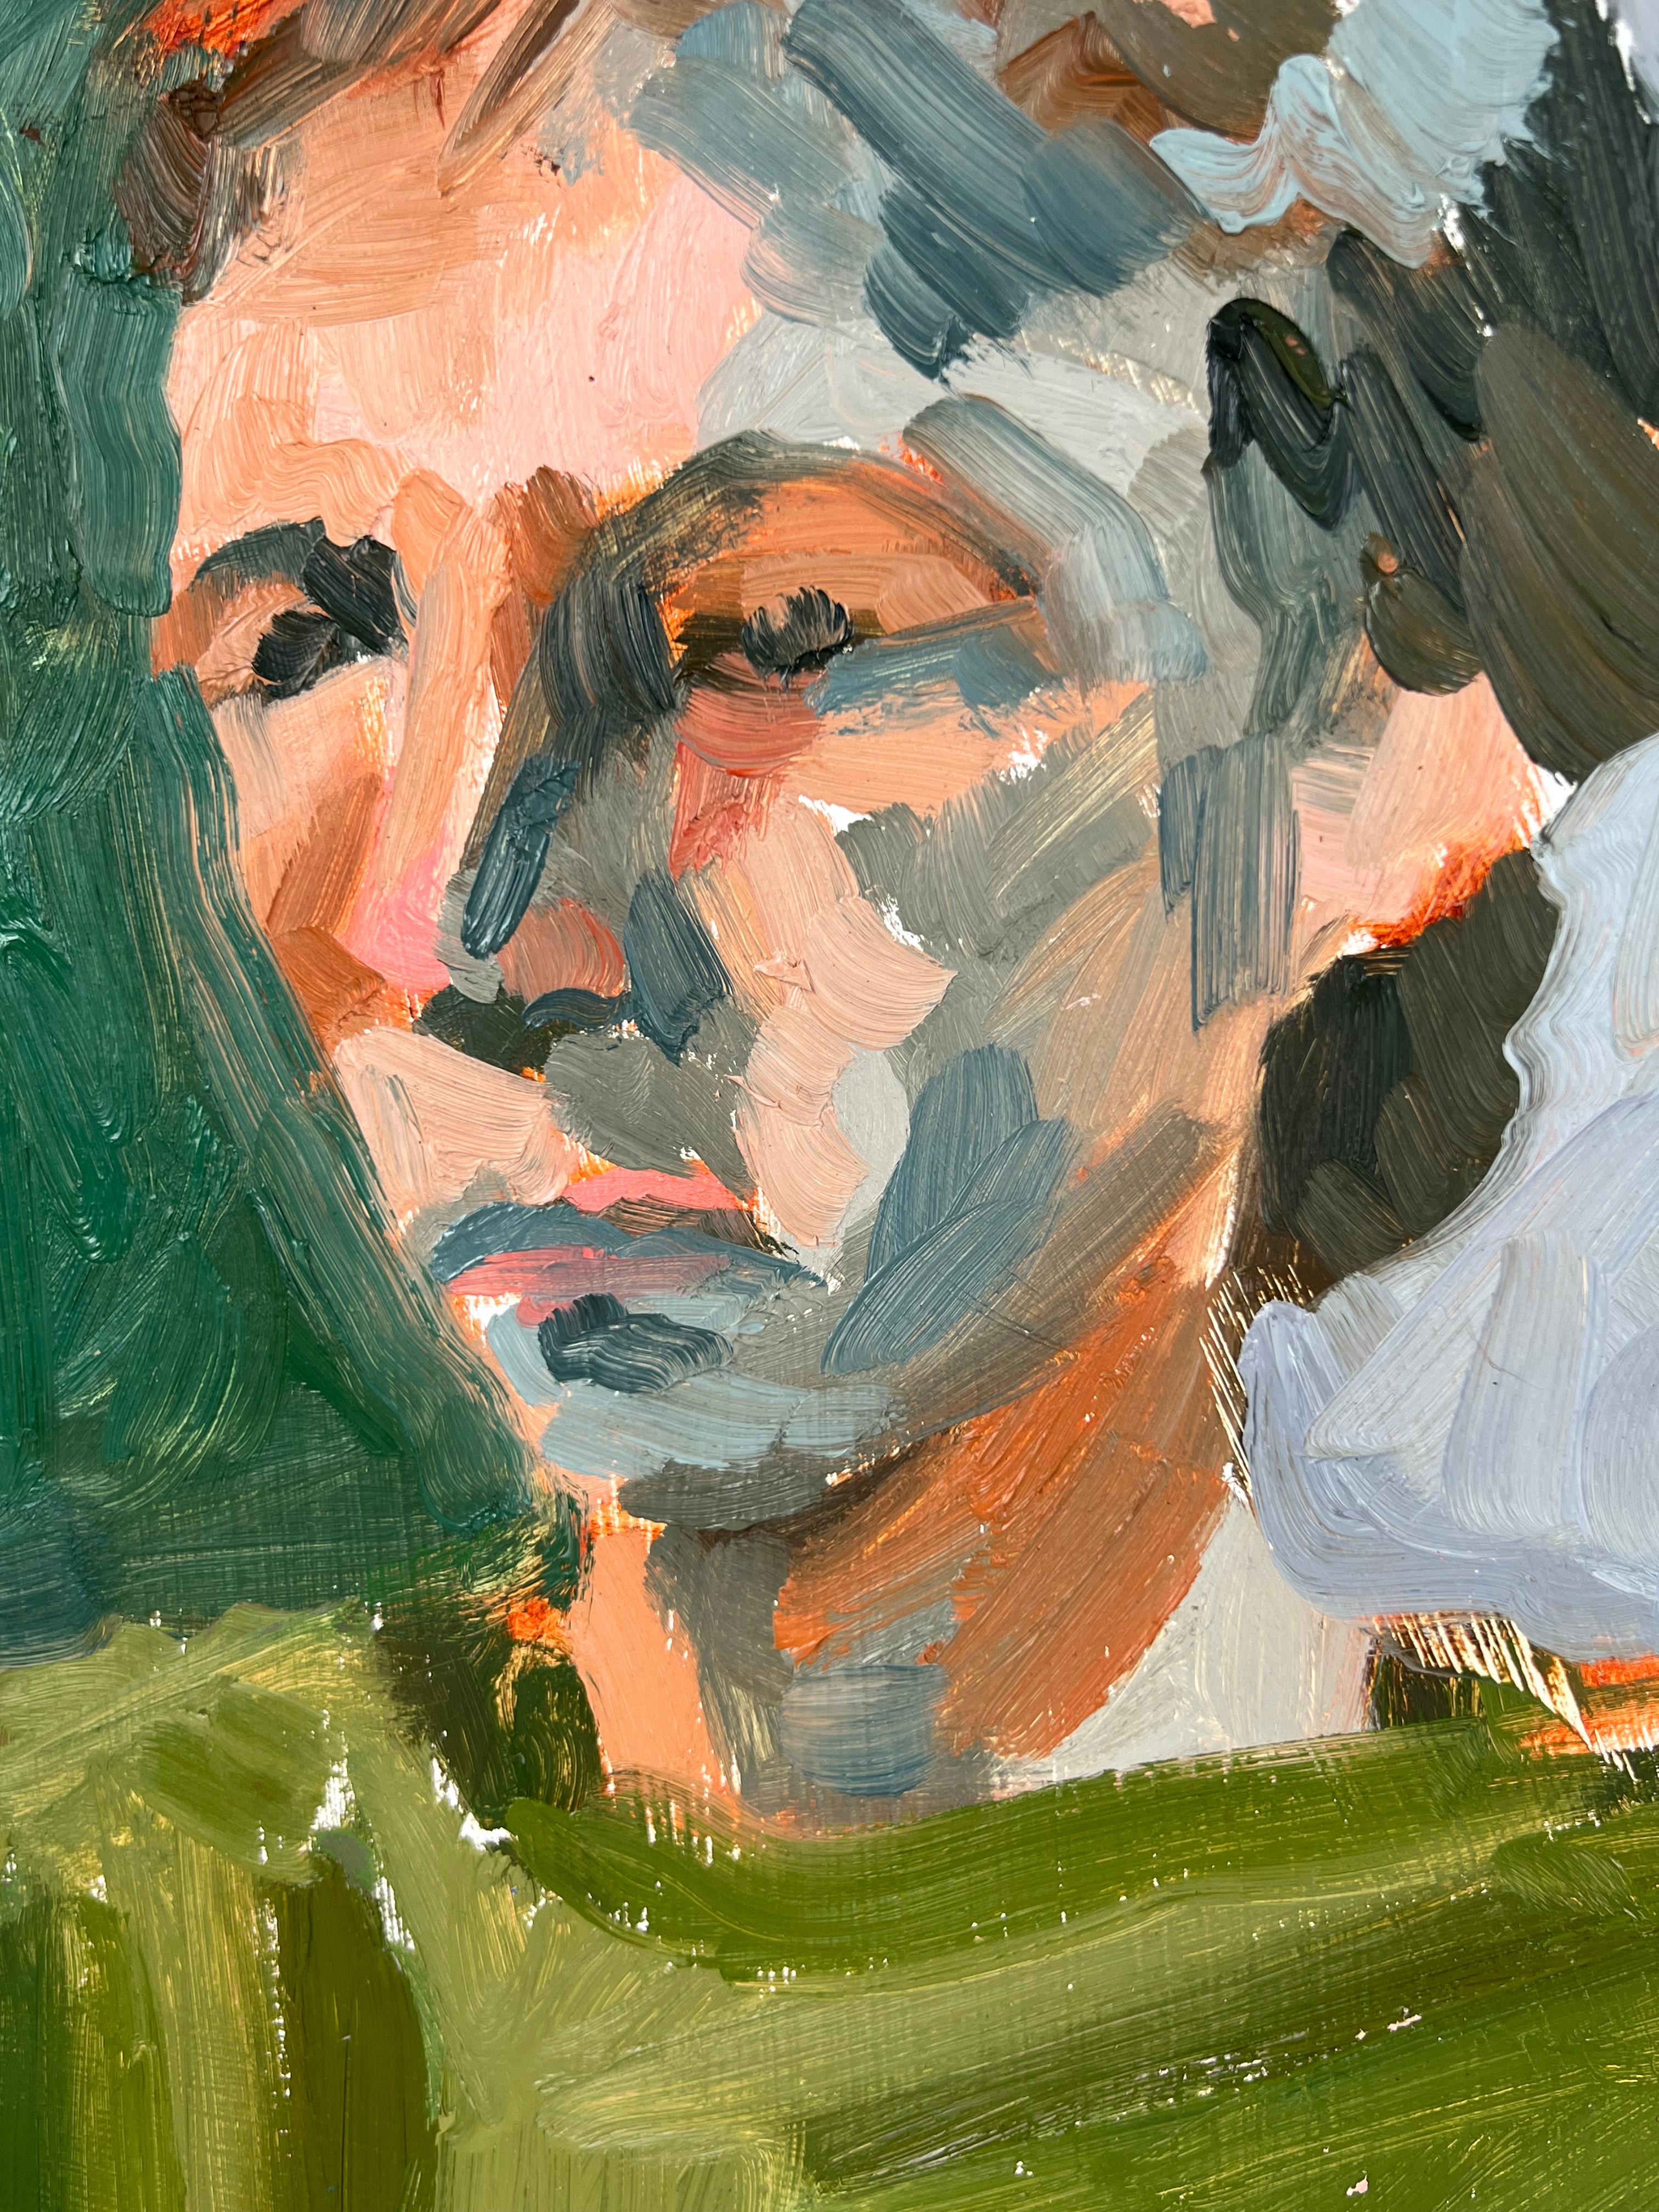 Sitzender Mann, Bay Area, Figurative School, Abstrakter Expressionismus

Sitzender Mann, ein abstraktes Porträt der Künstlerin Heather Speck (Amerikanerin, B-1978) aus San Francisco. Das Motiv ist in kräftigen Farben und breiten Strichen in